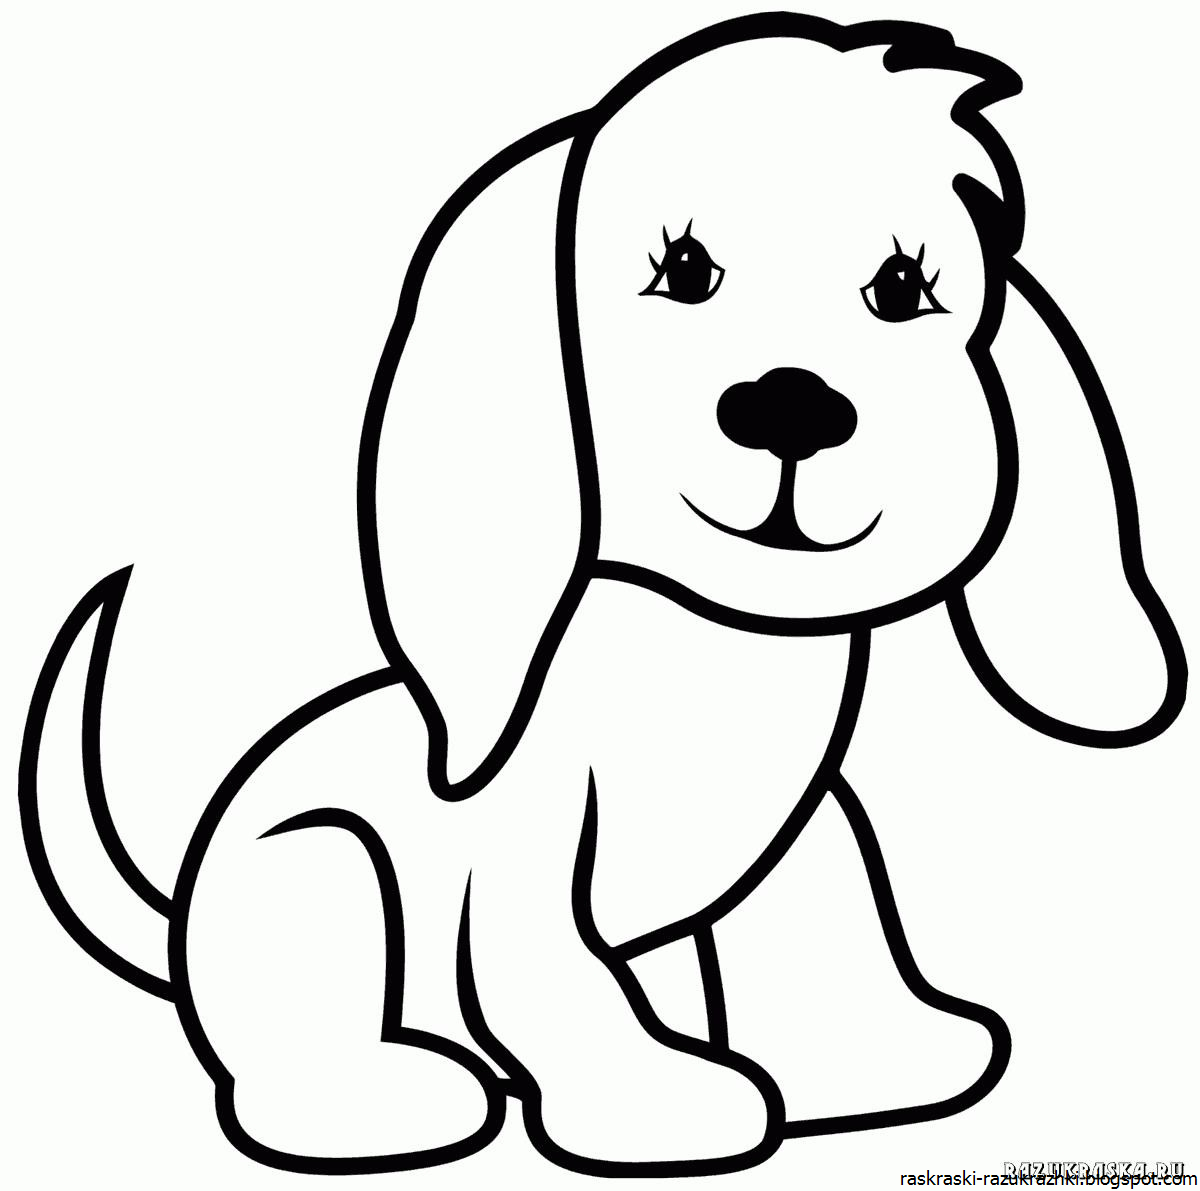 Раскраски Собака для детей - Распечатать (А4), Скачать и Онлайн!